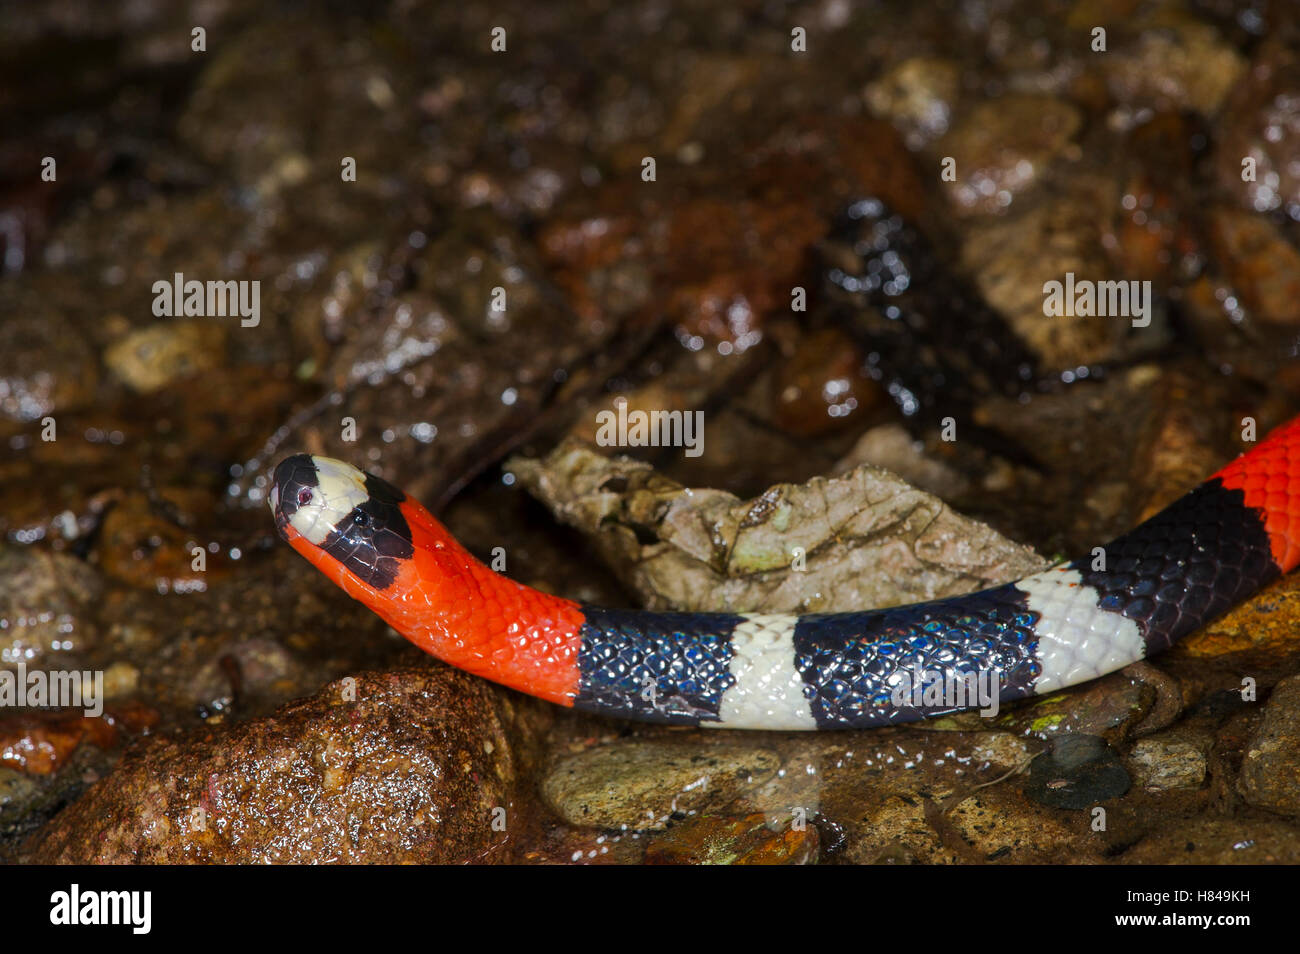 South American Coral Snake (Micrurus lemniscatus), originaire d'Amérique du Sud Banque D'Images